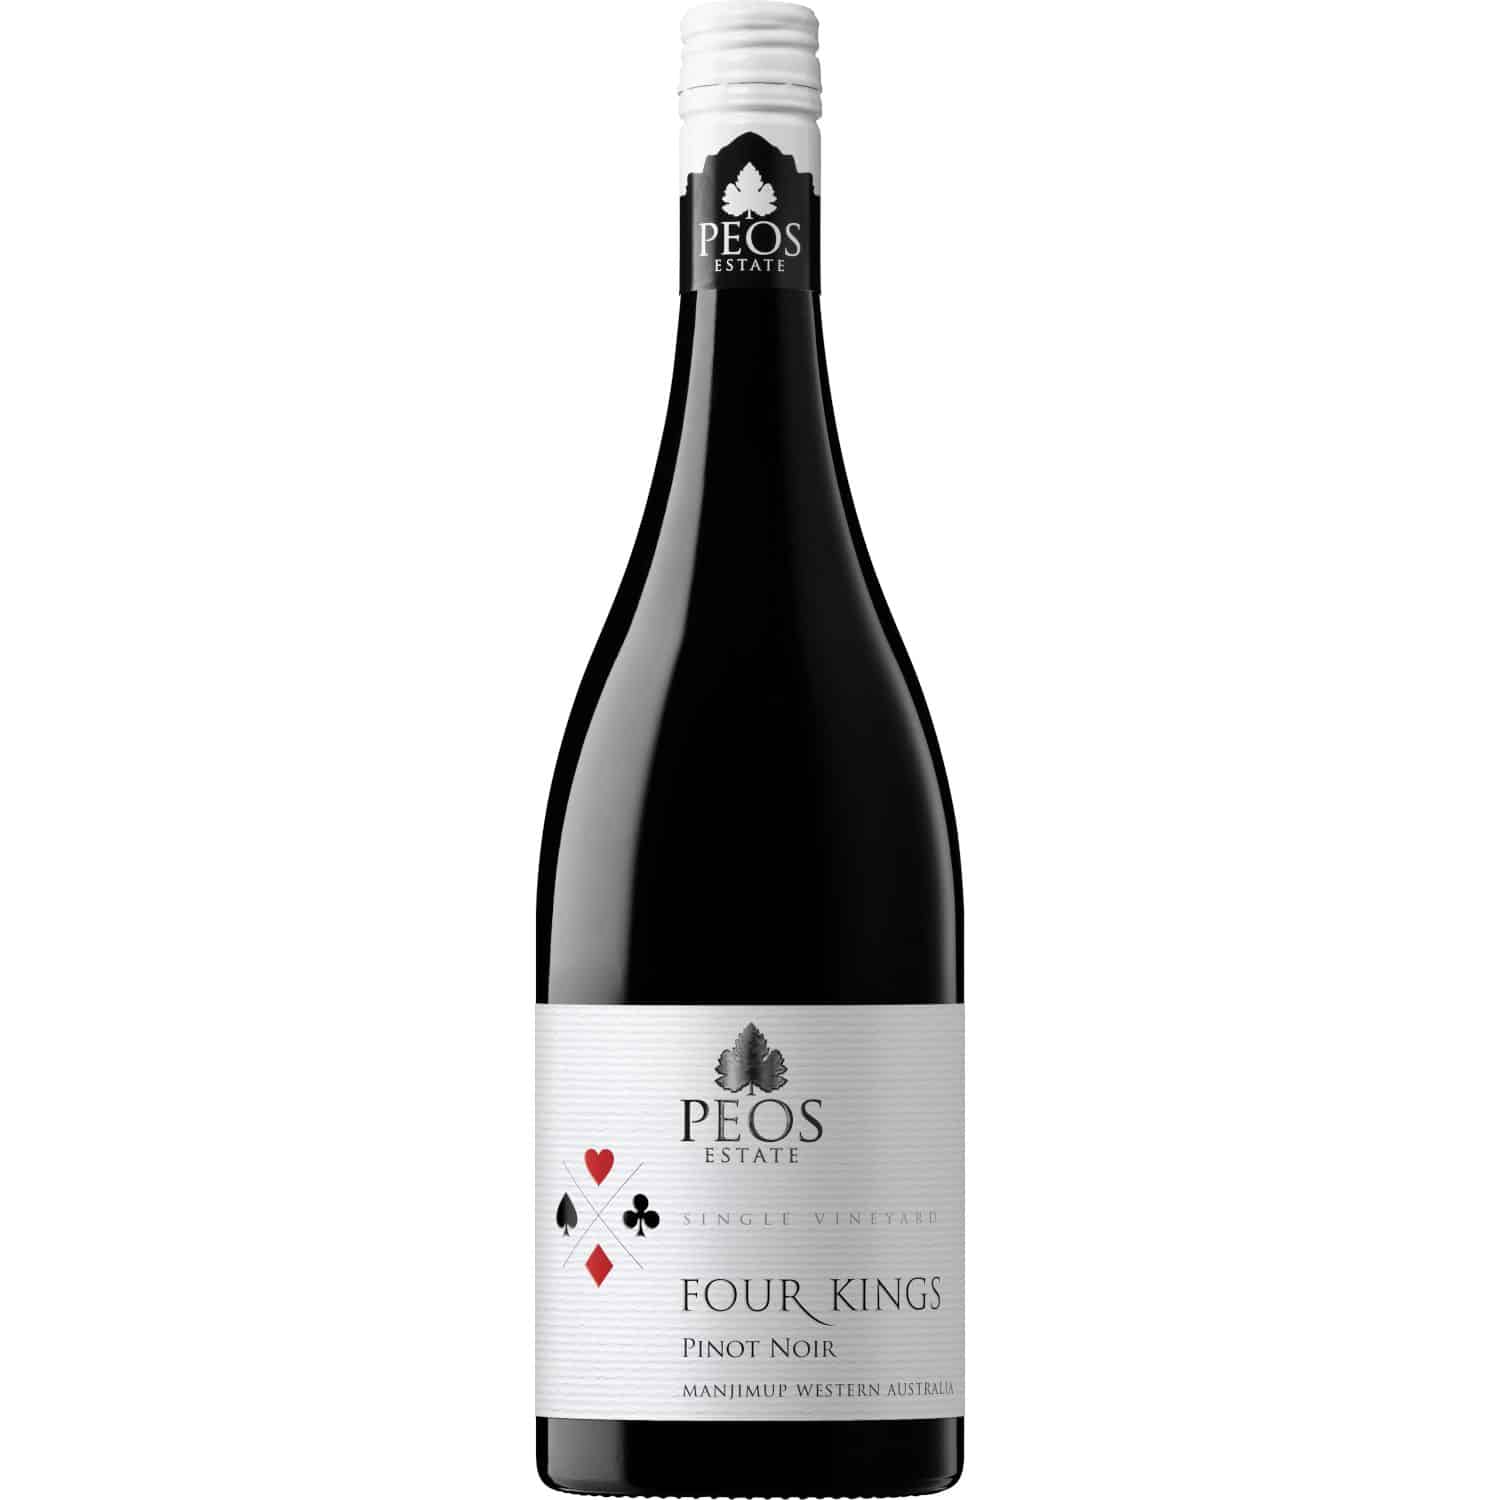 Peos Four Kings Pinot Noir